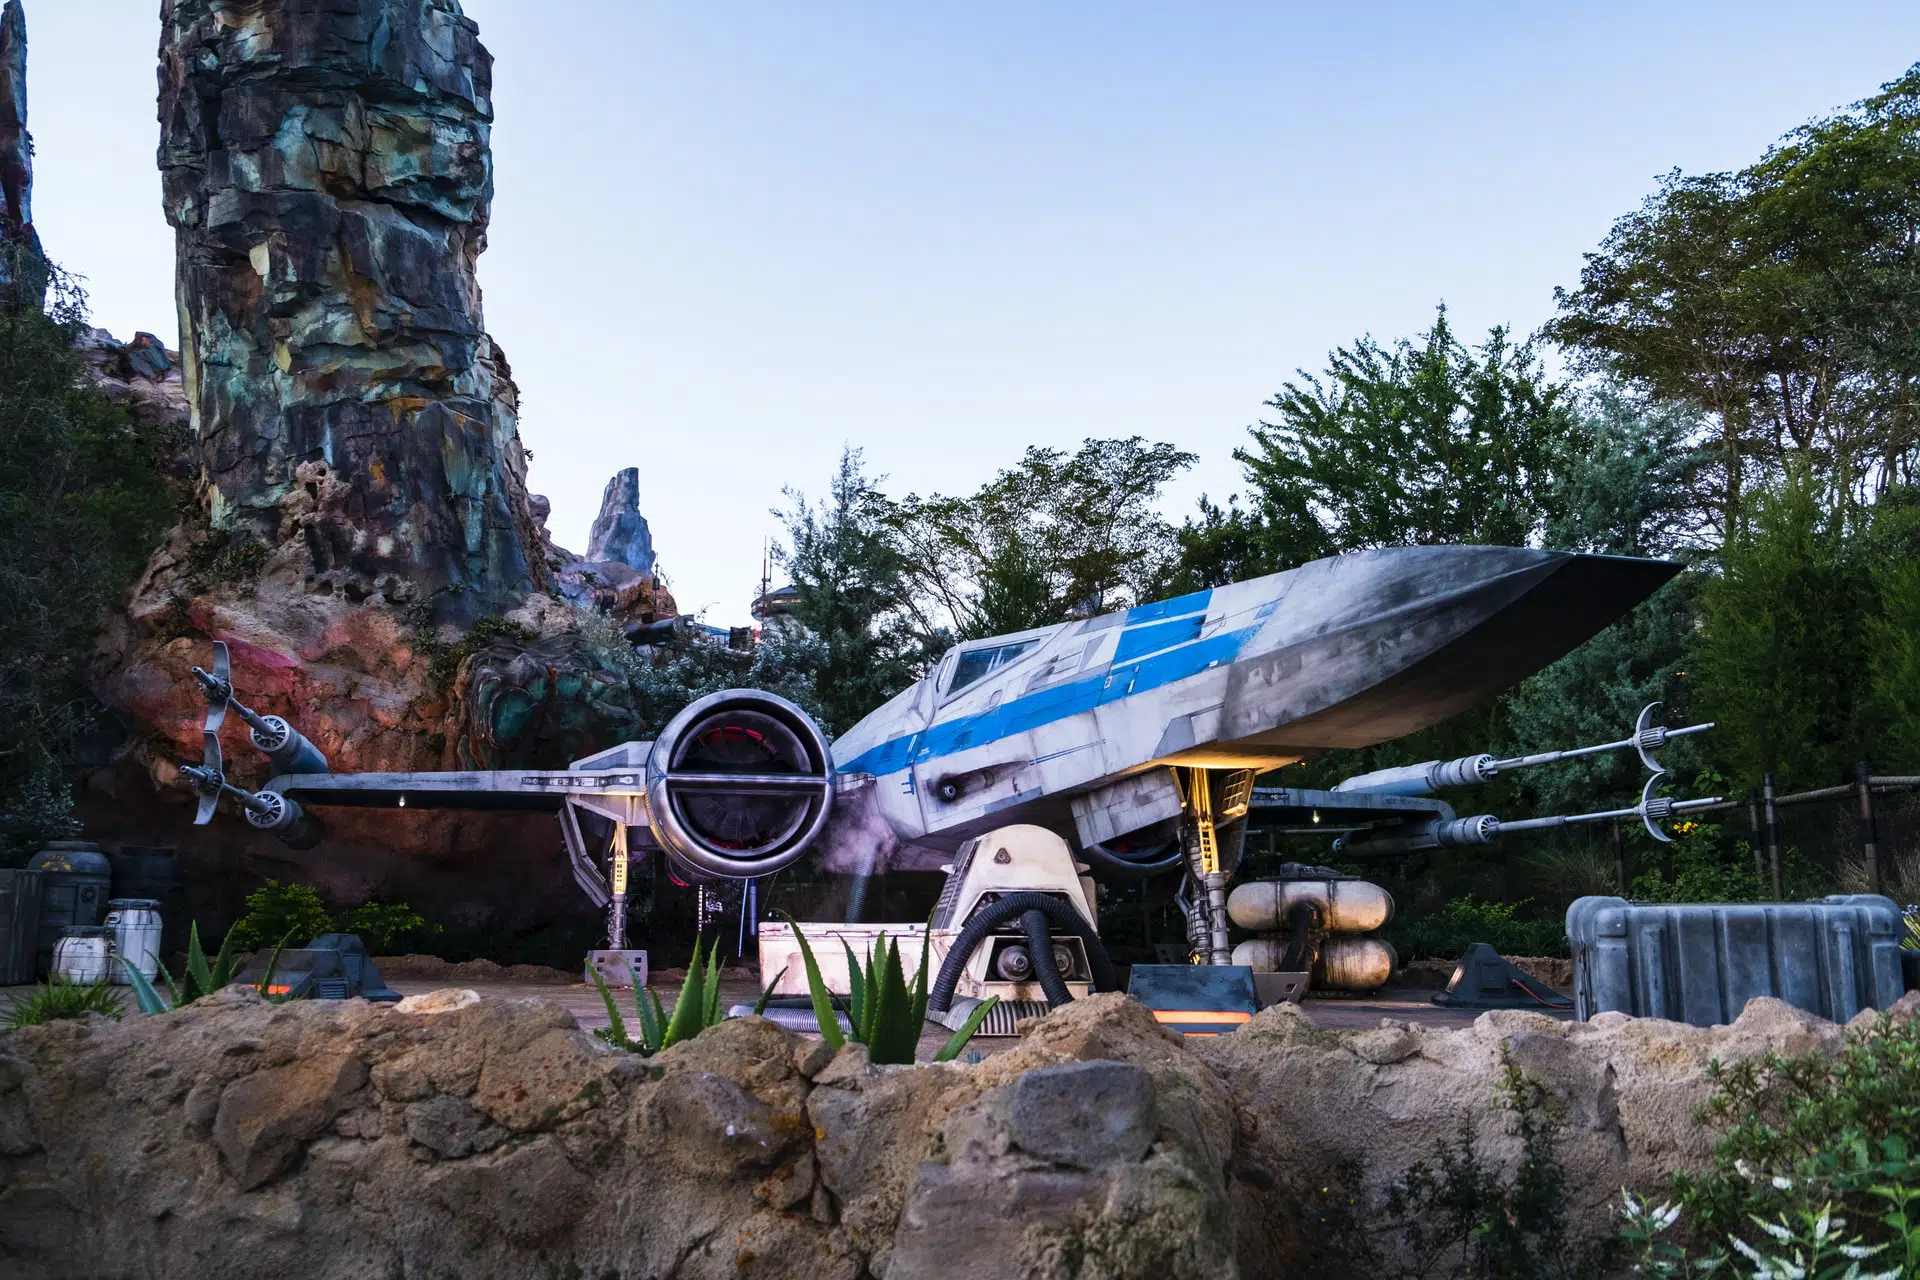 Le X-Wing (Star Wars) se retrouvera bientôt au Smithsonian Museum